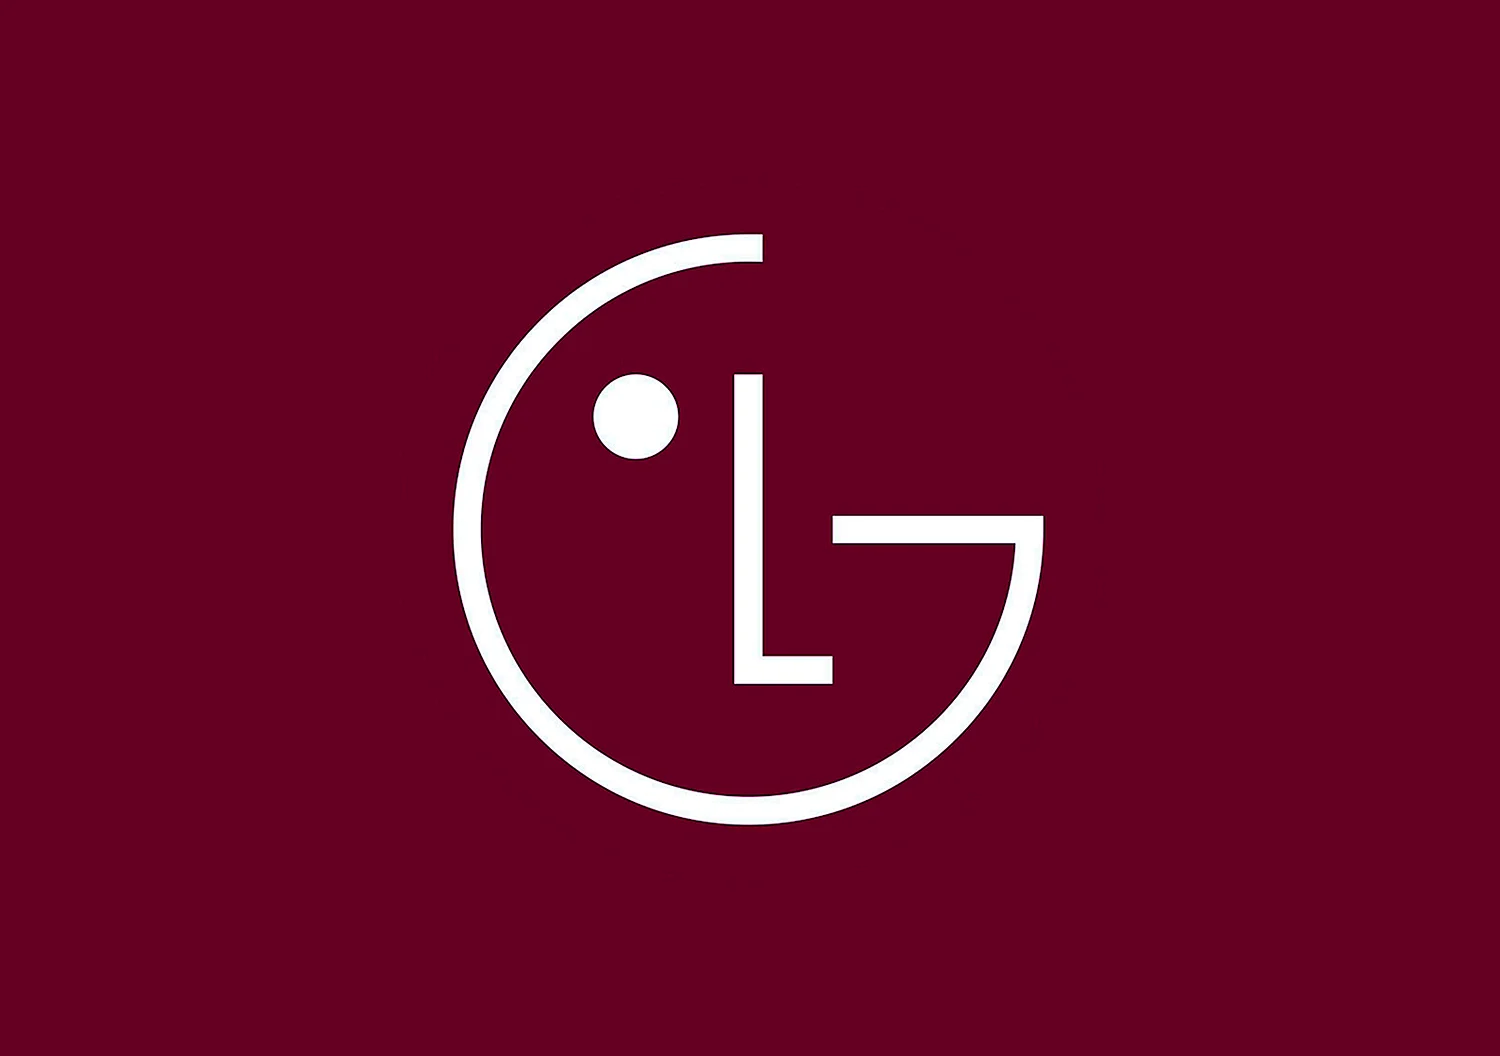 LG logo 1